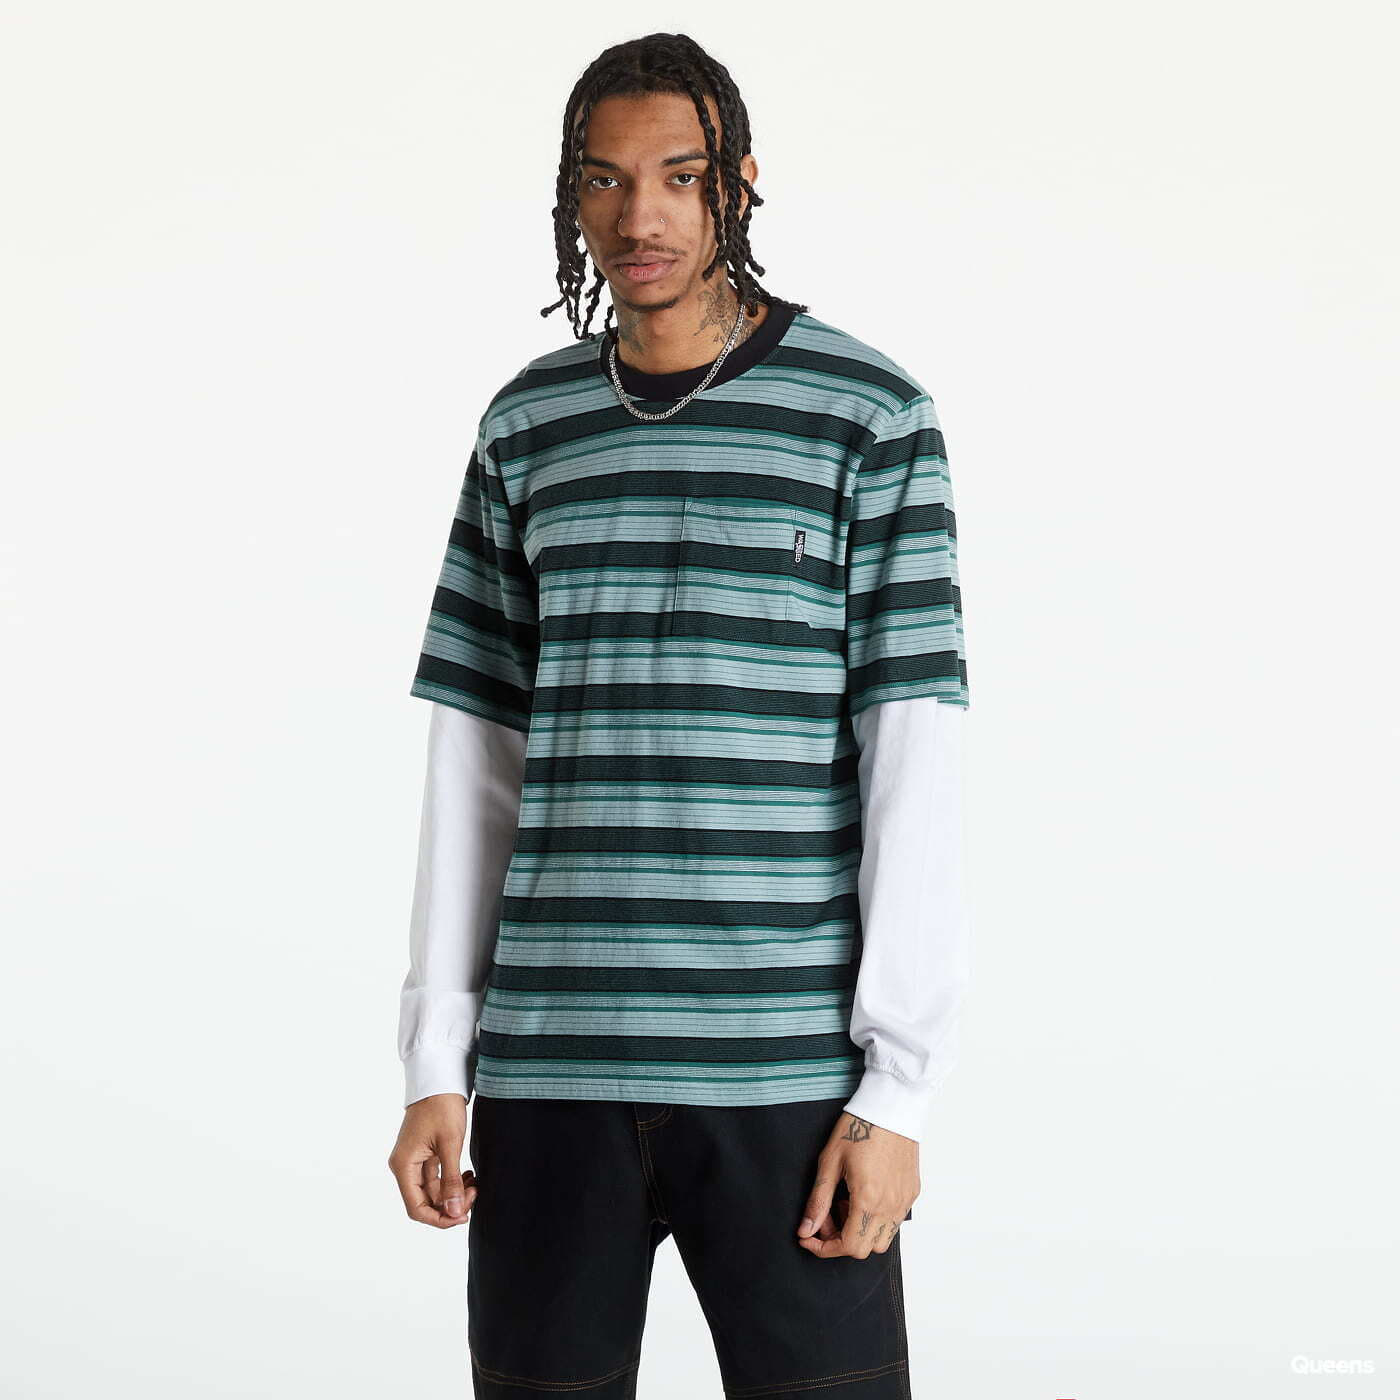 Tričká Wasted Paris Age Stripes T-shirt zelené / bíle / černé